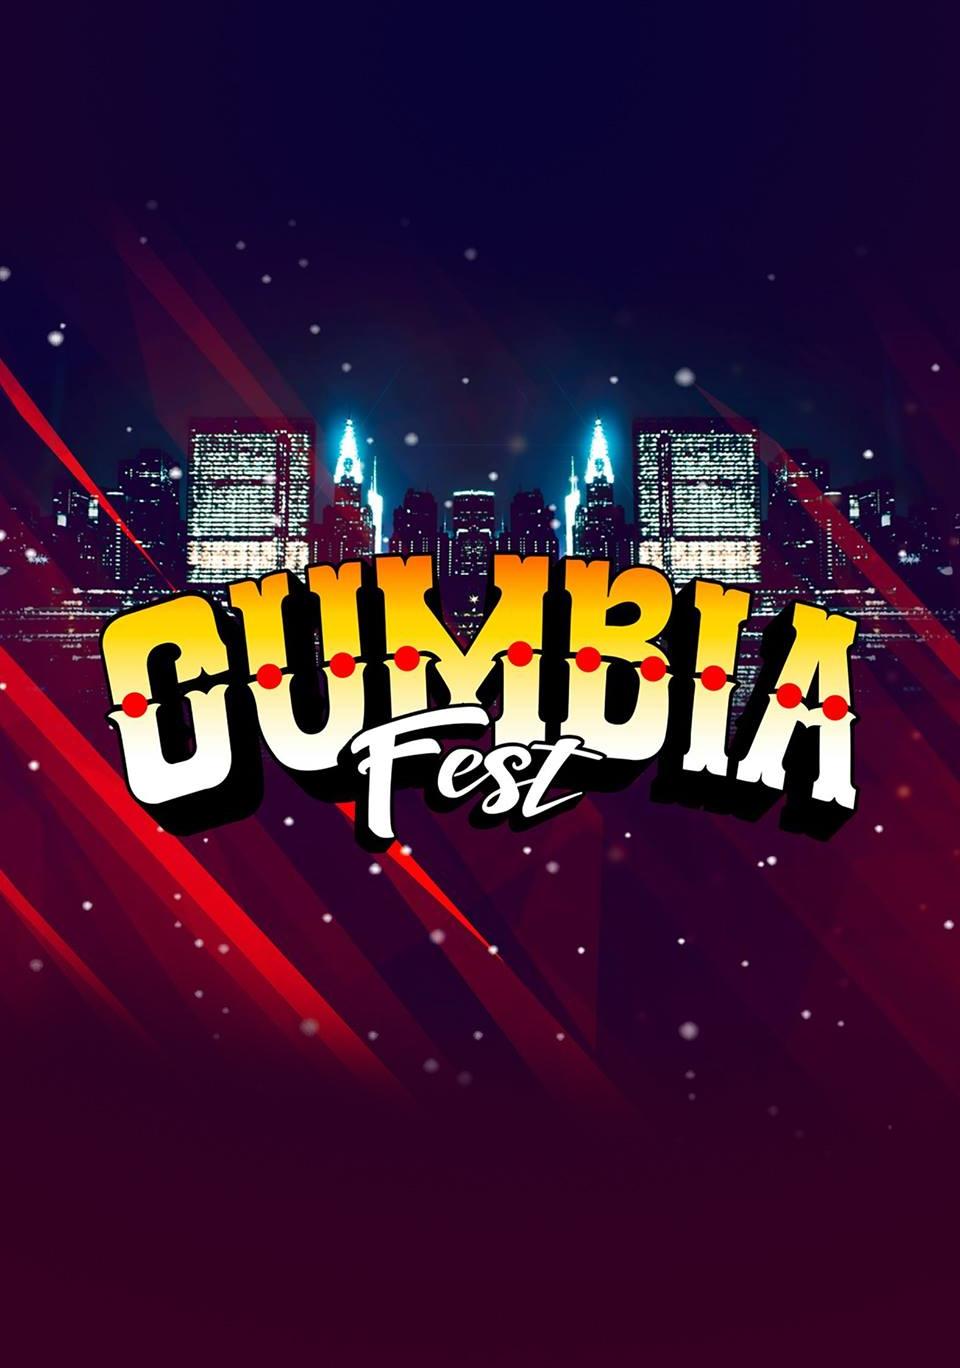 Cumbia Fest - Noche de Brujas, Luis Lambis y más!